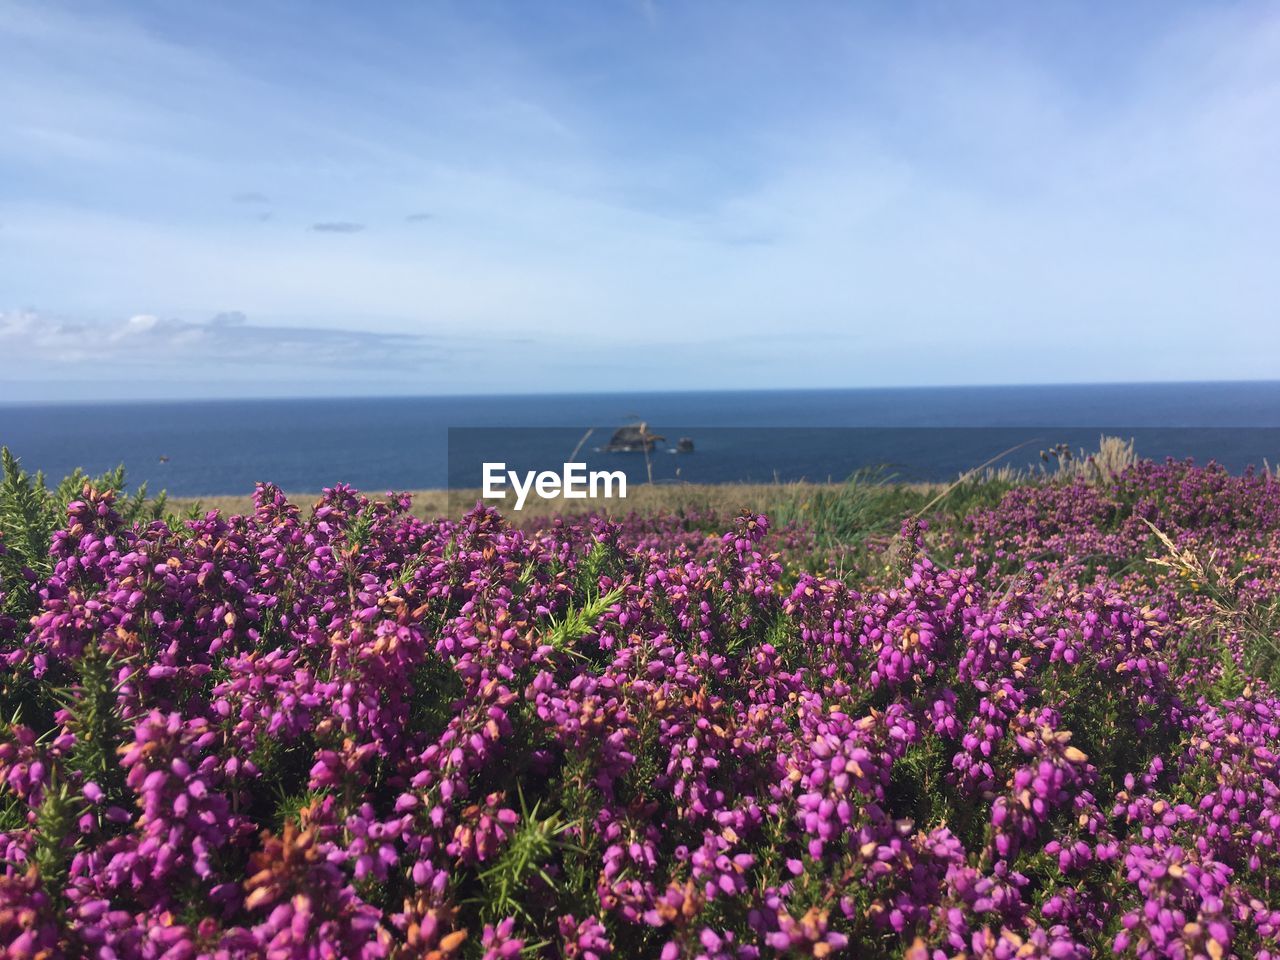 Purple flowering plants by sea against sky